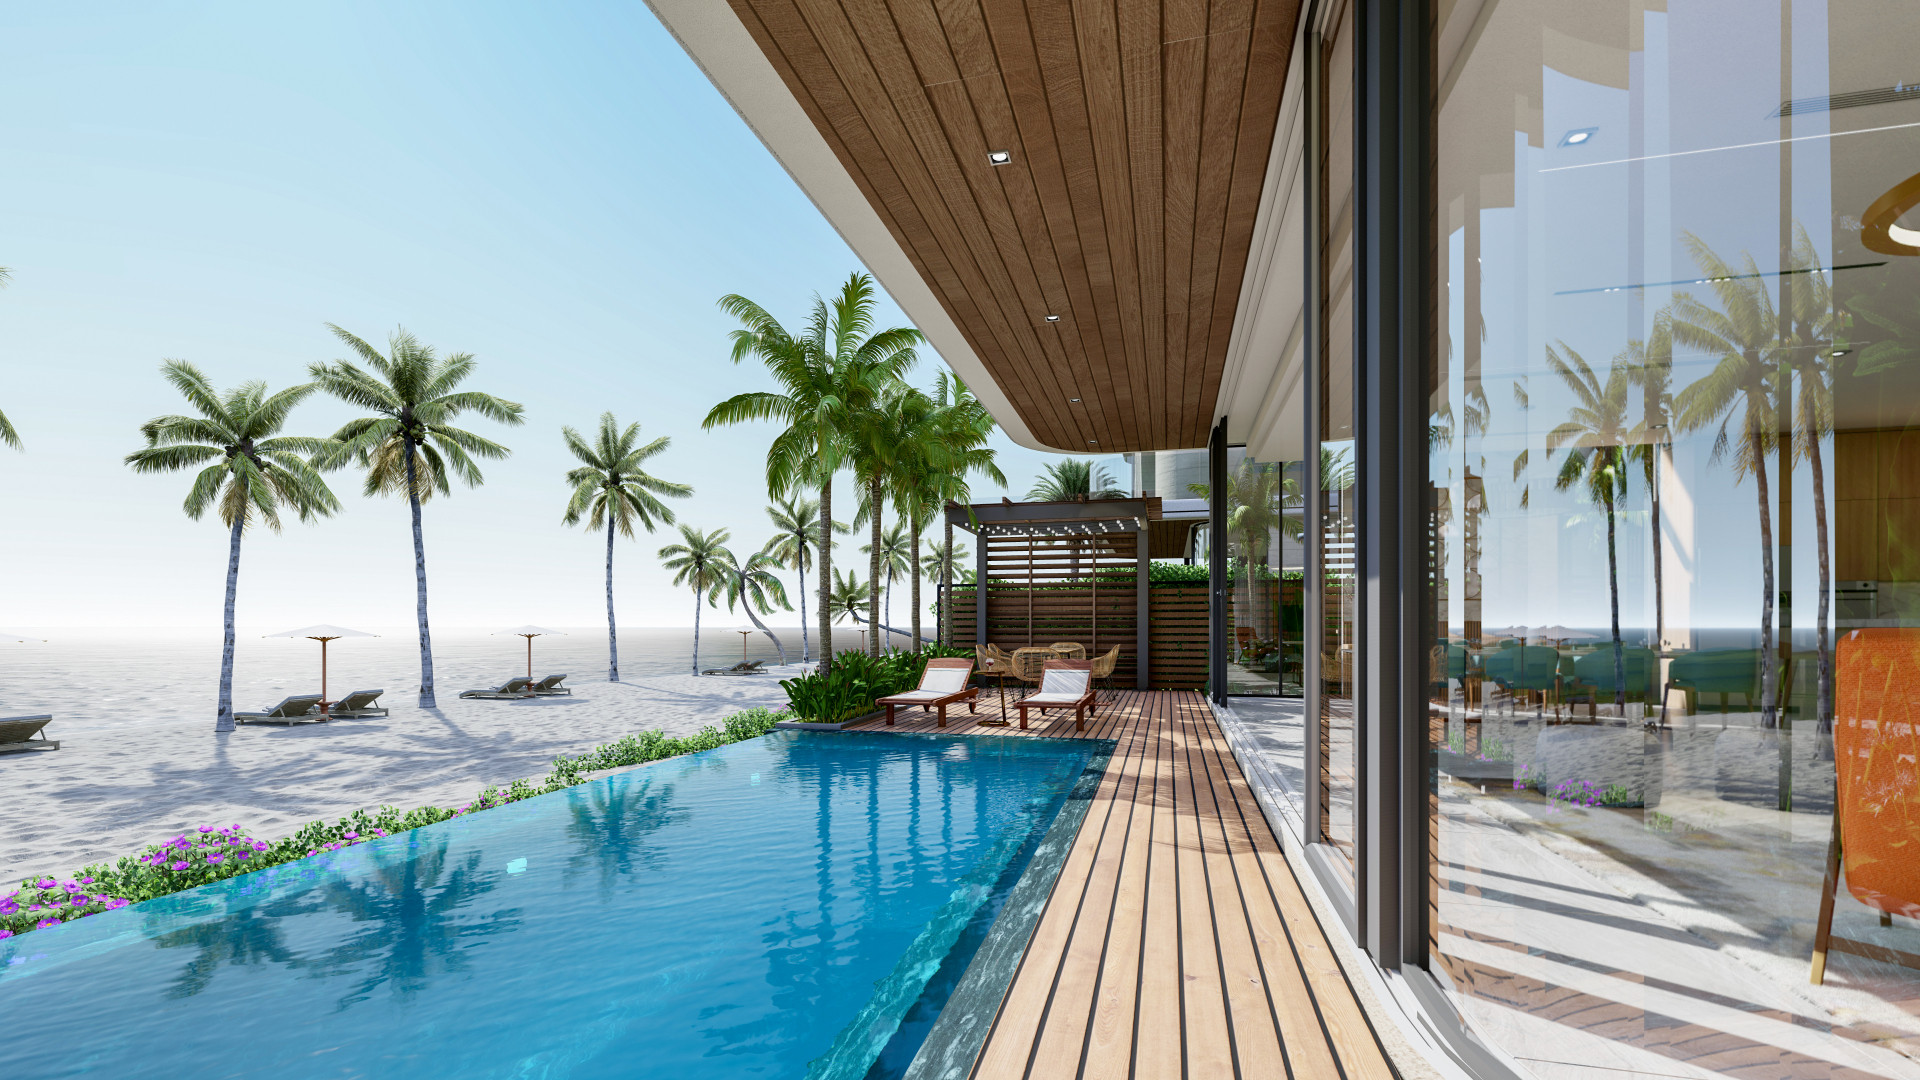 Venezia Beach Luxury Residences & Resort với 1 km đường bờ biển và 1,1 km đường sông là thuộc loại hàng hiếm trên thị trường nên thu hút sự quan tâm của giới đầu tư trong thời gian qua.